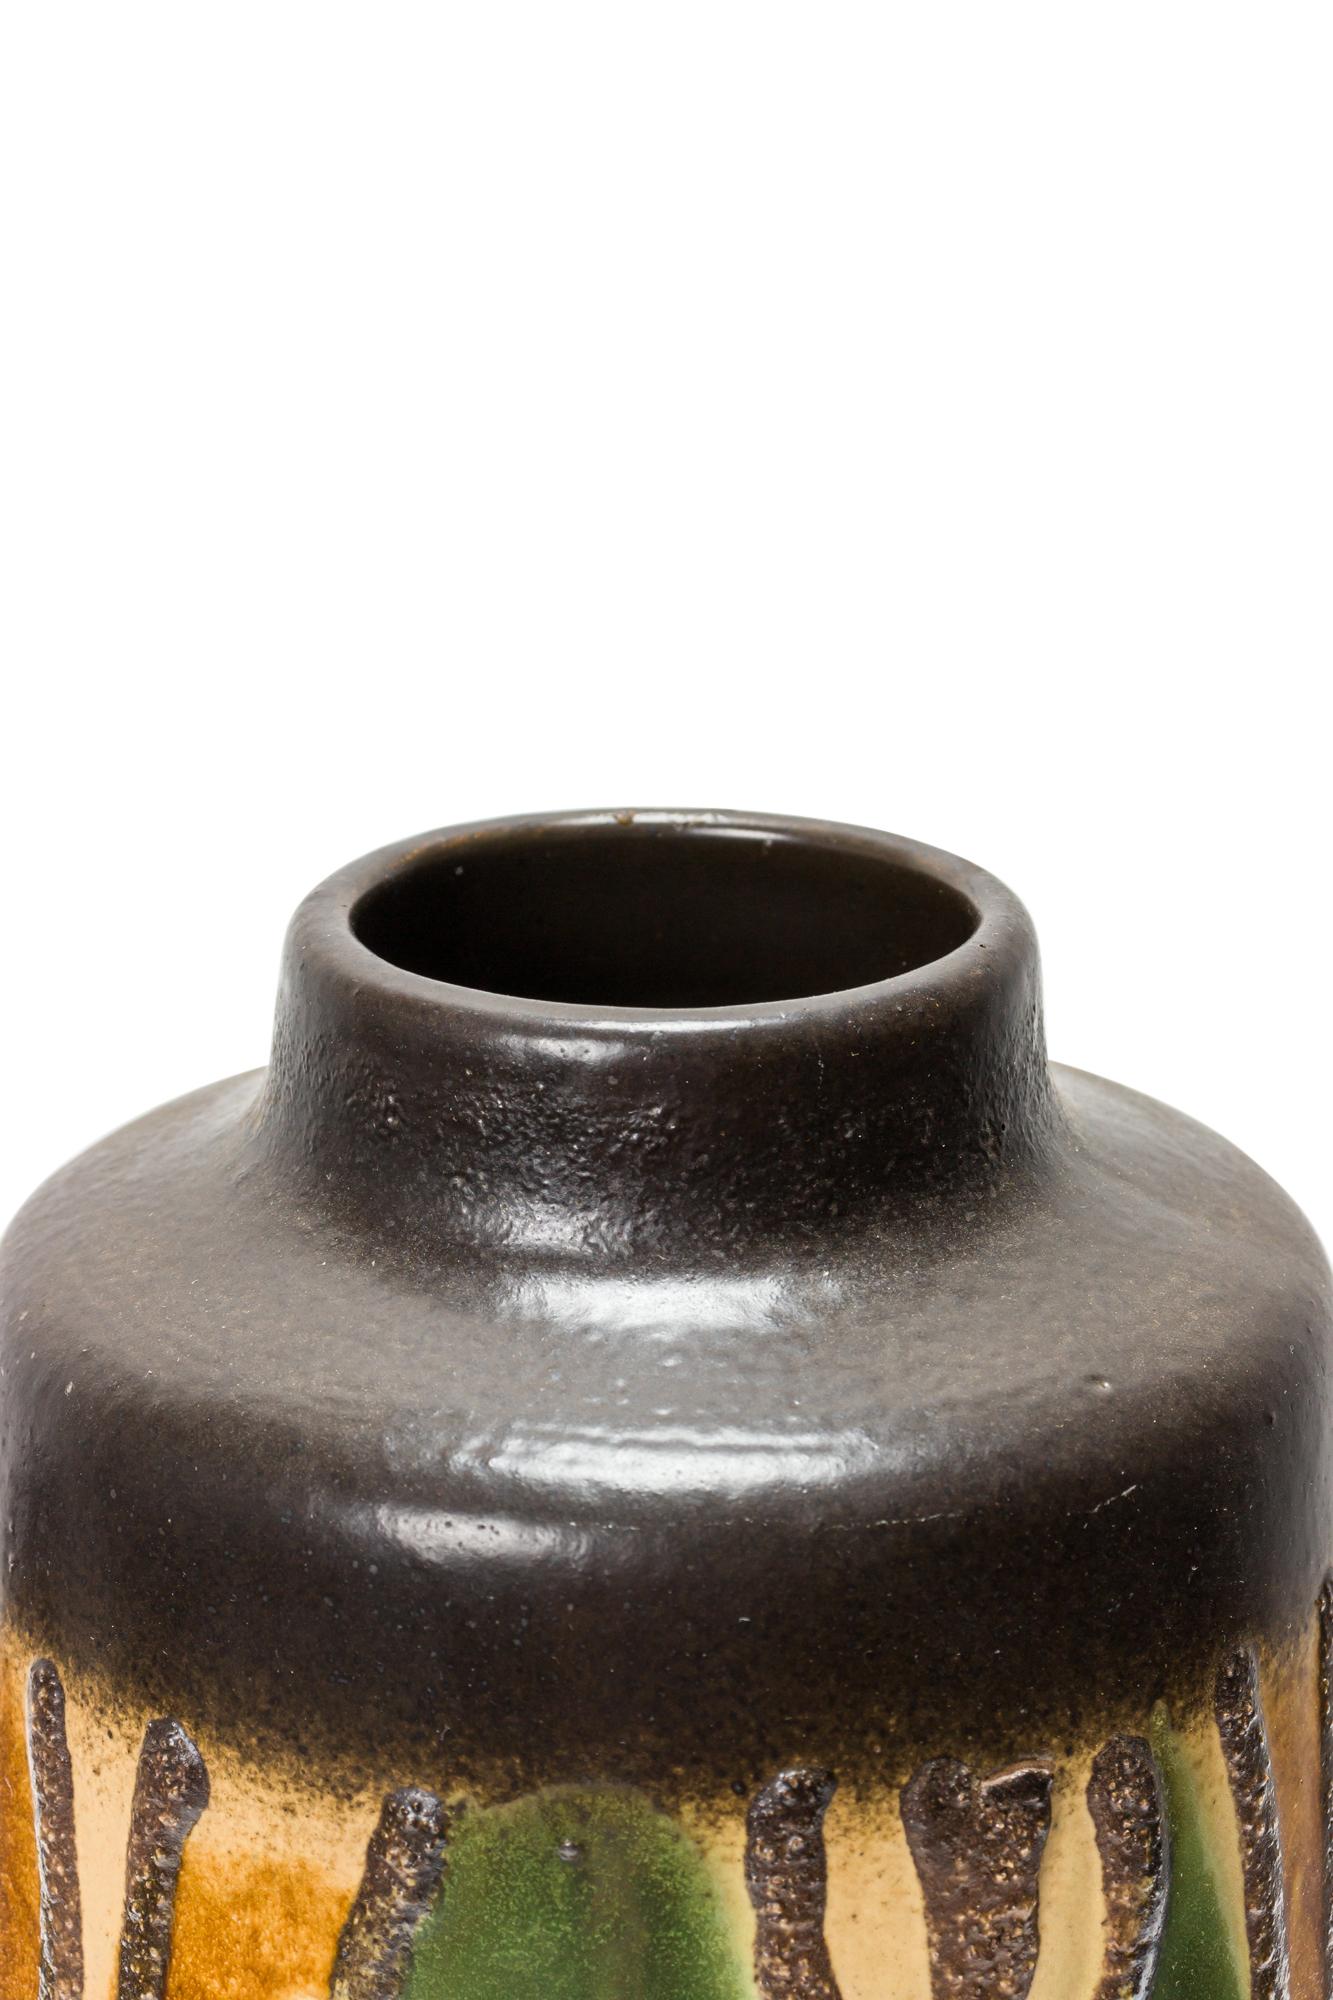 Vase allemand du milieu du siècle, de forme cylindrique, en céramique, avec un motif ondulé organique brun, vert et beige autour du corps, avec une bande de brun profond à la base et à l'embouchure. (VEB HALDENSLEBEN, numéroté en bas, 3045A).